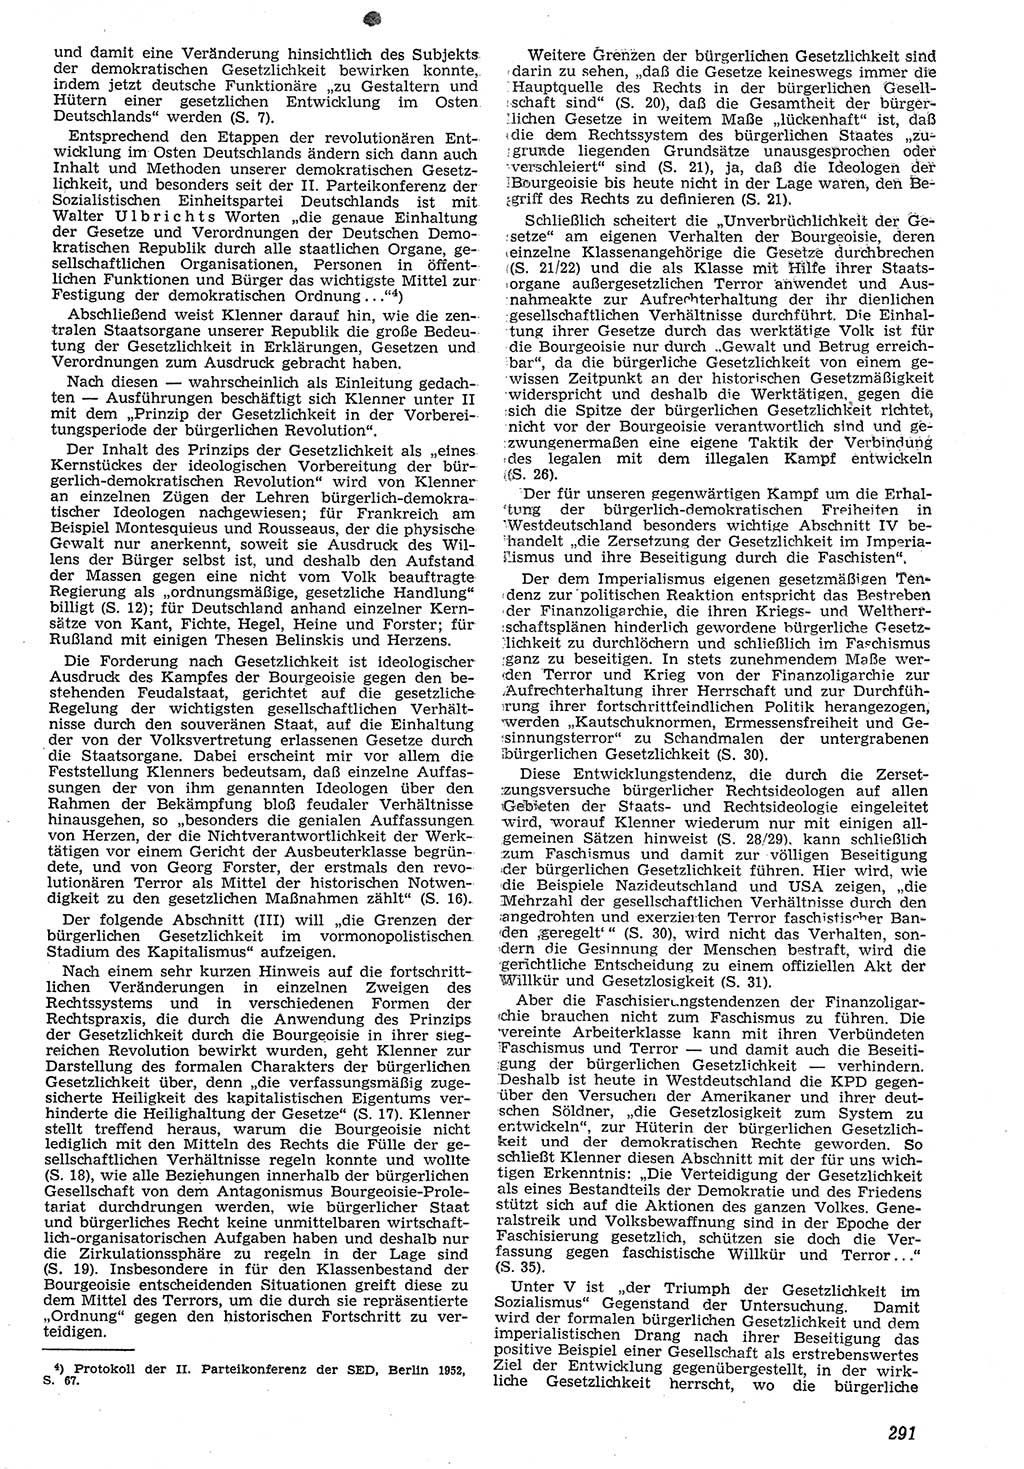 Neue Justiz (NJ), Zeitschrift für Recht und Rechtswissenschaft [Deutsche Demokratische Republik (DDR)], 7. Jahrgang 1953, Seite 291 (NJ DDR 1953, S. 291)